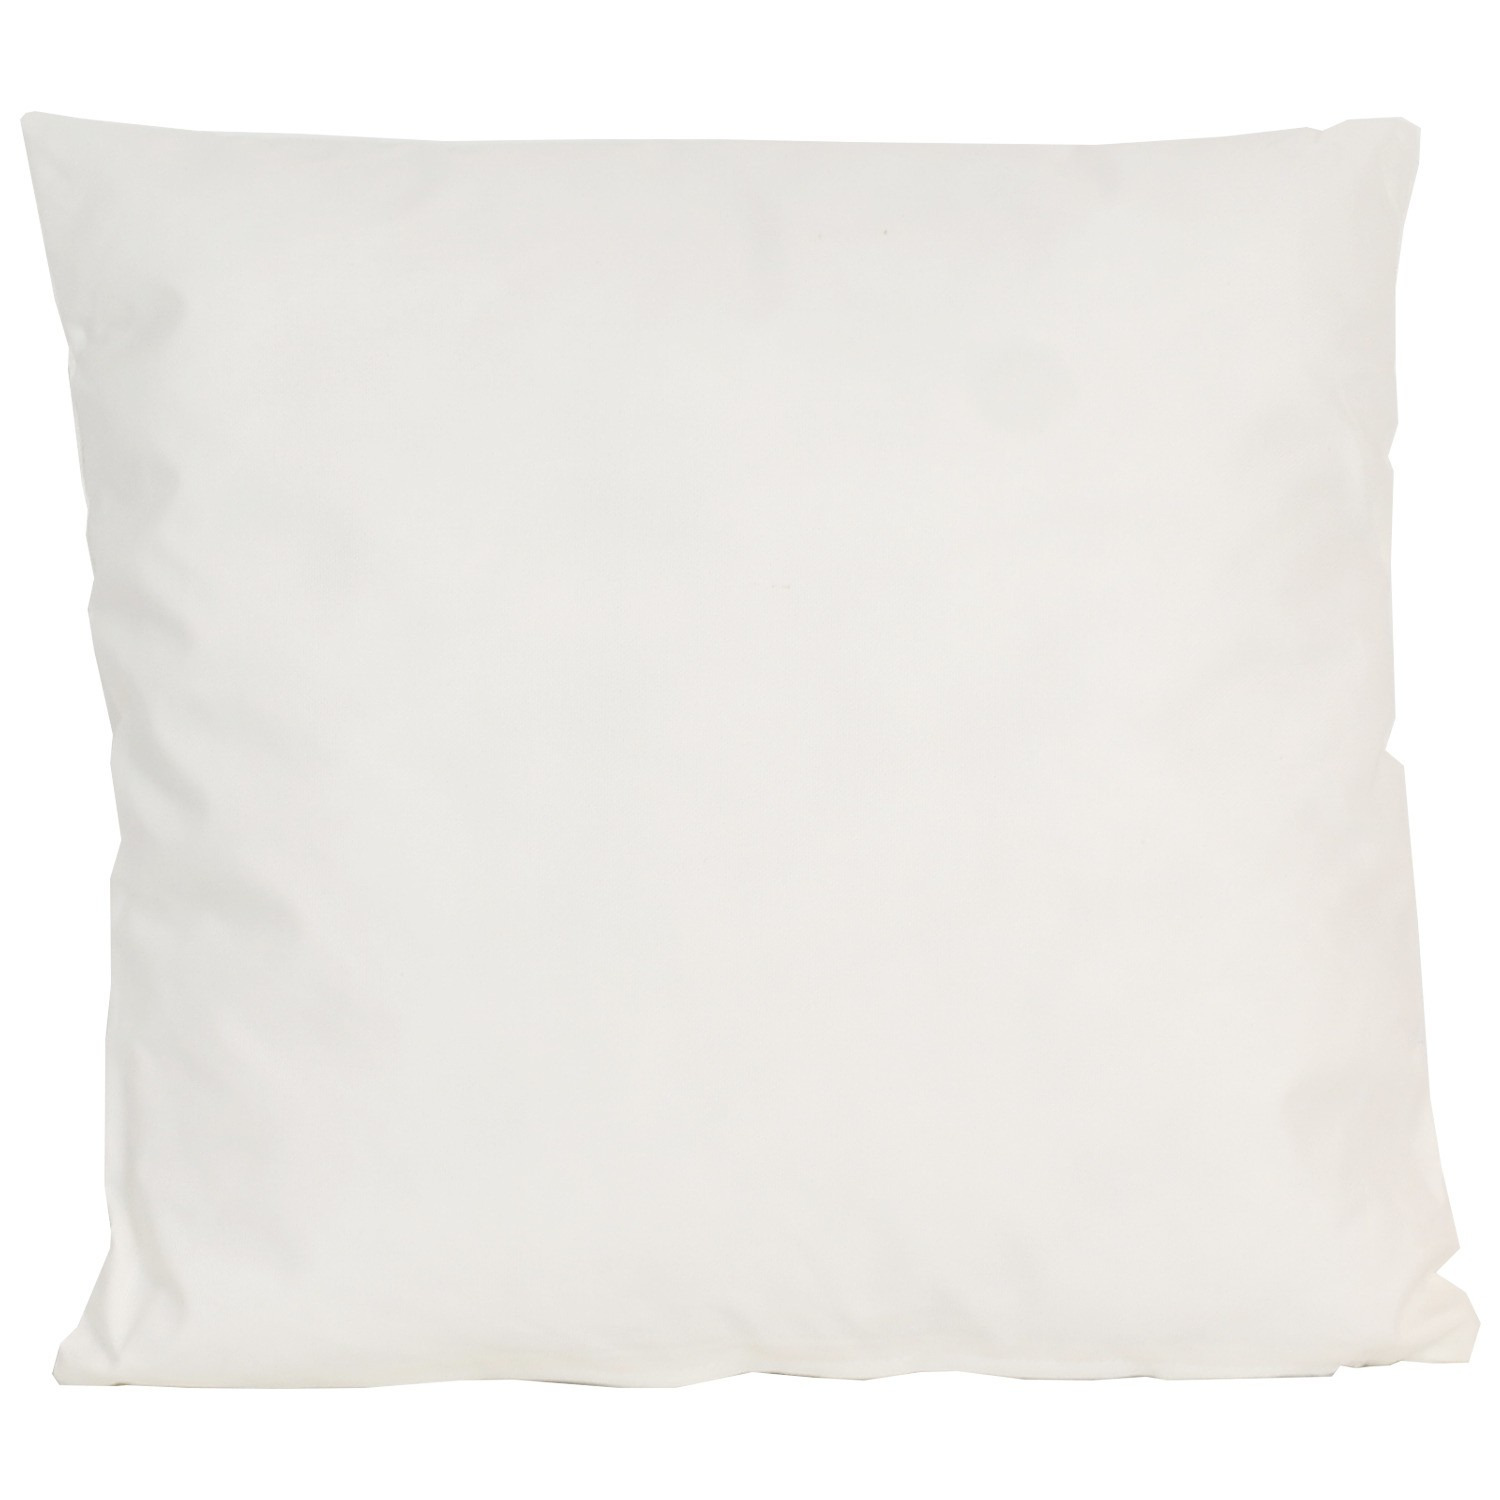 1x Buiten-woonkamer-slaapkamer kussens in het ivoor wit 45 x 45 cm